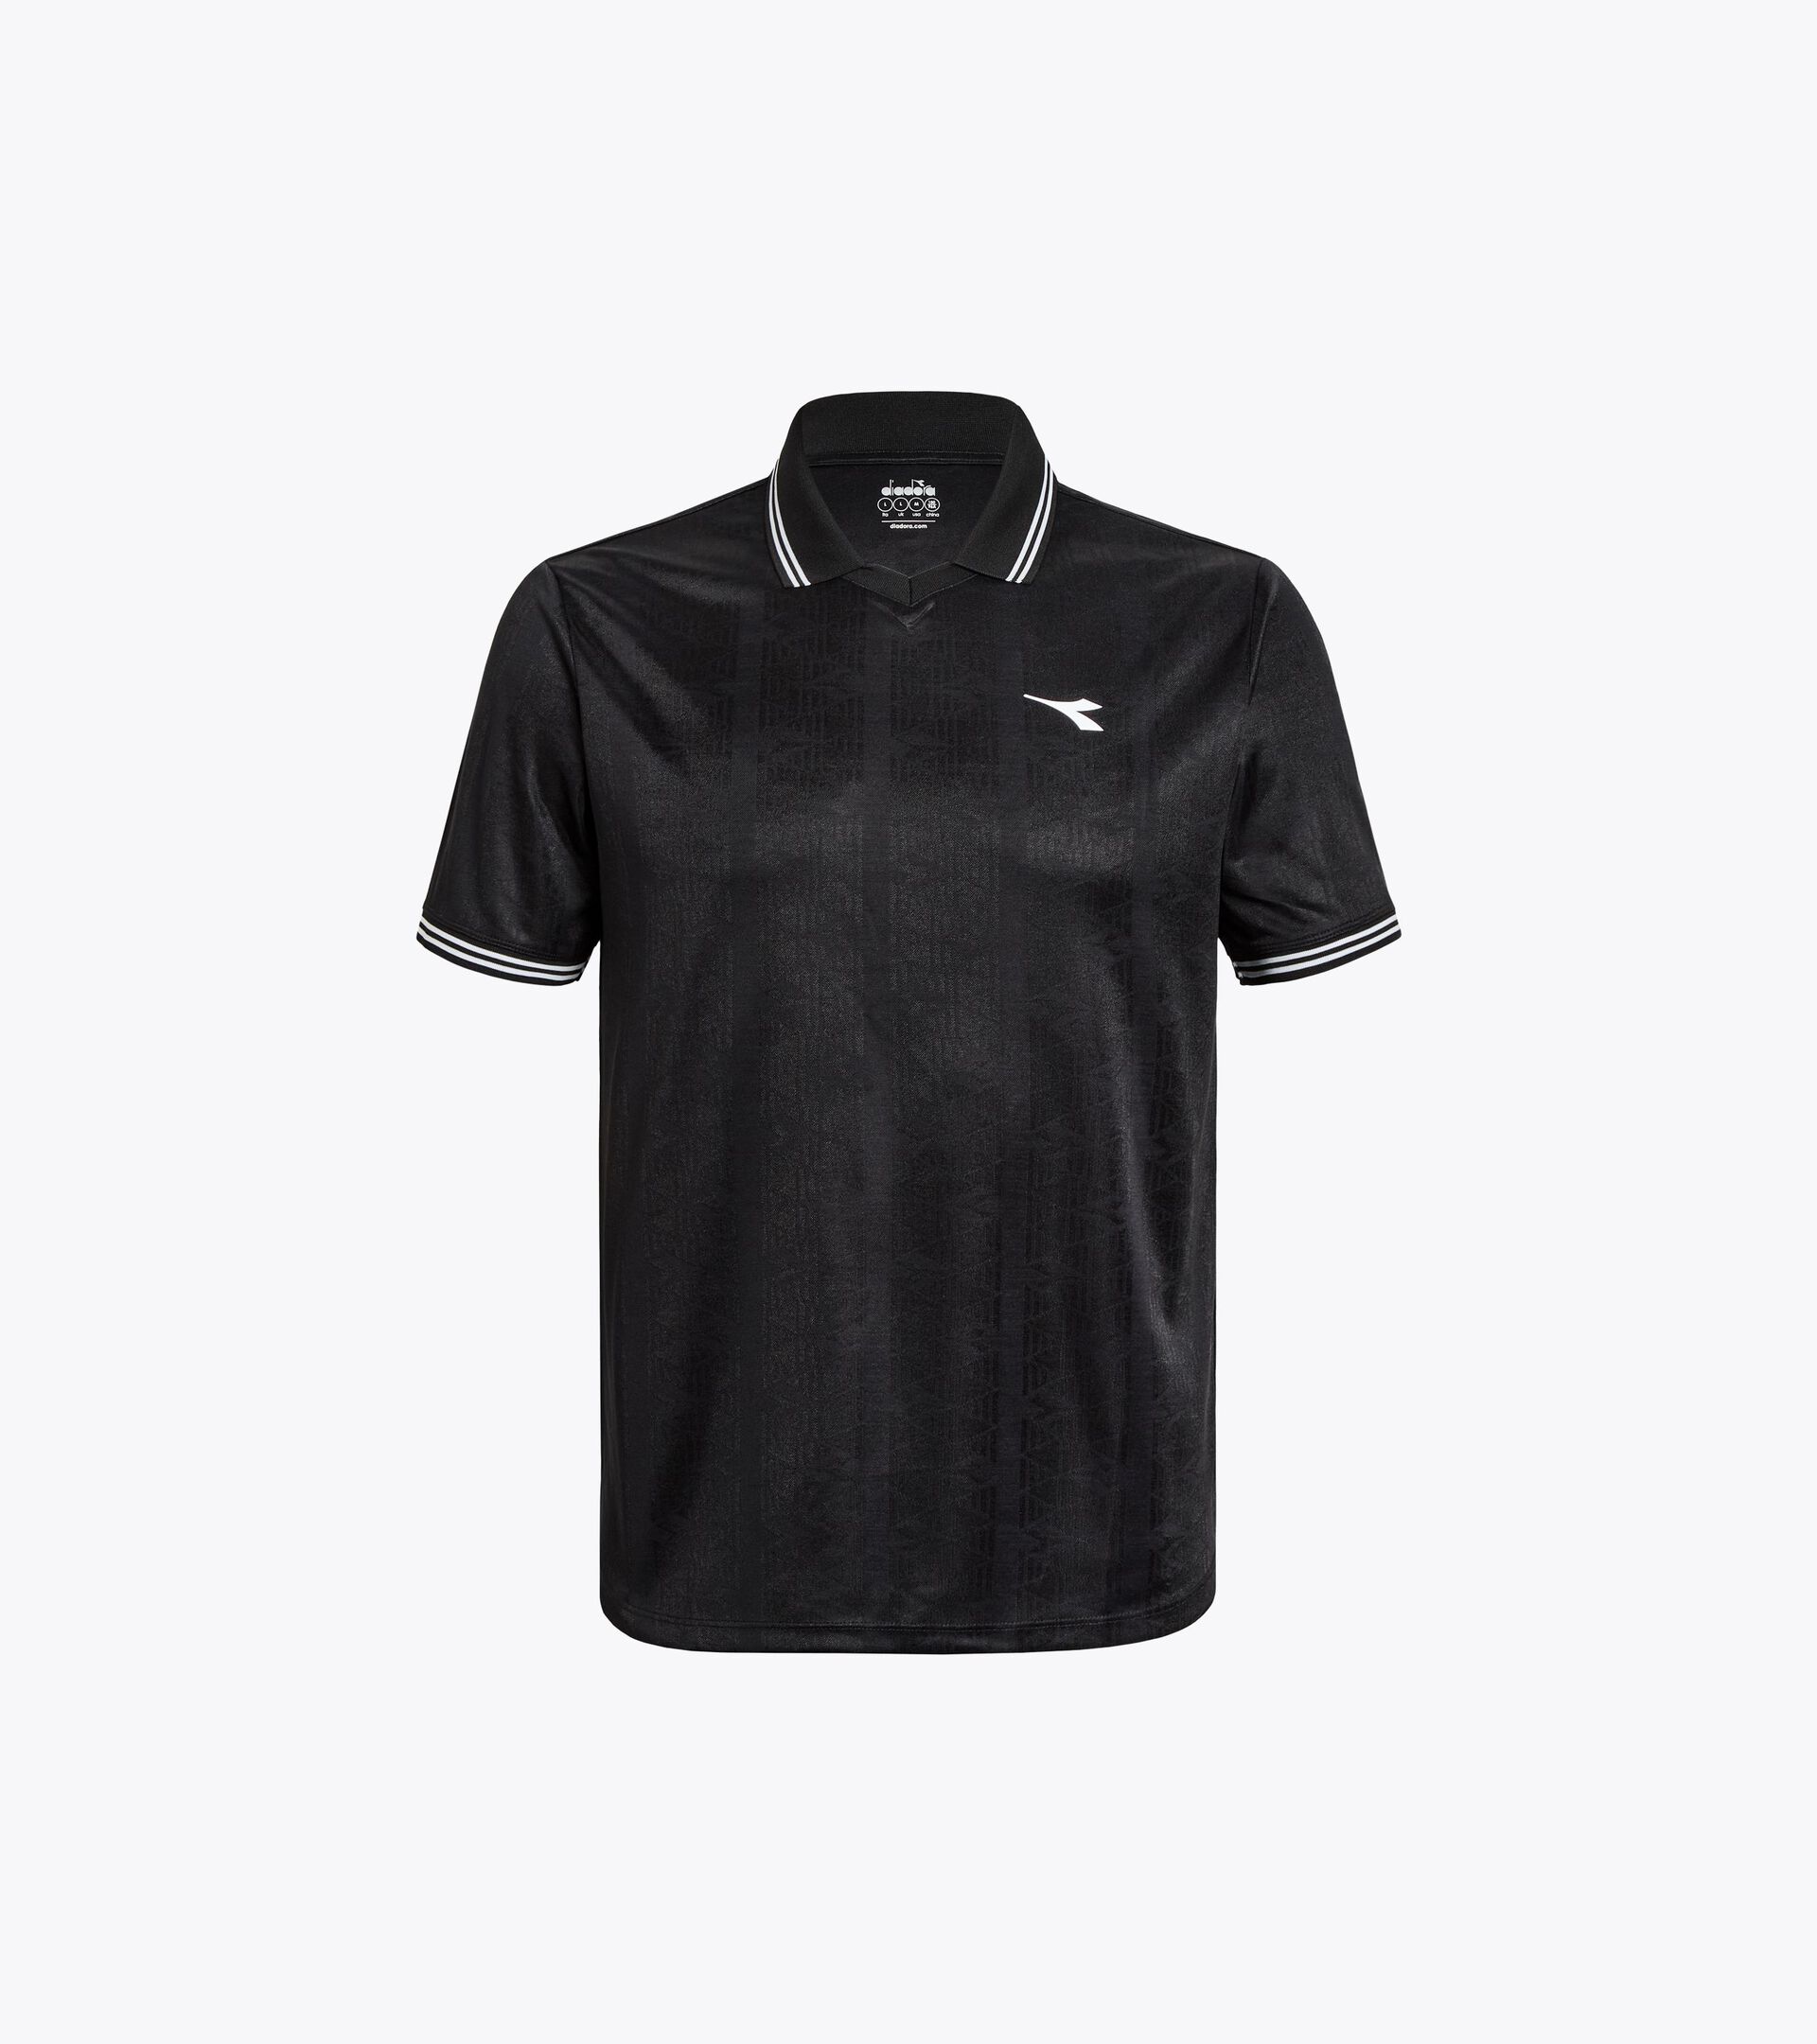 90s-inspired calcio shirt - Gender neutral
 MATCH SHIRT SCUDETTO BLACK - Diadora